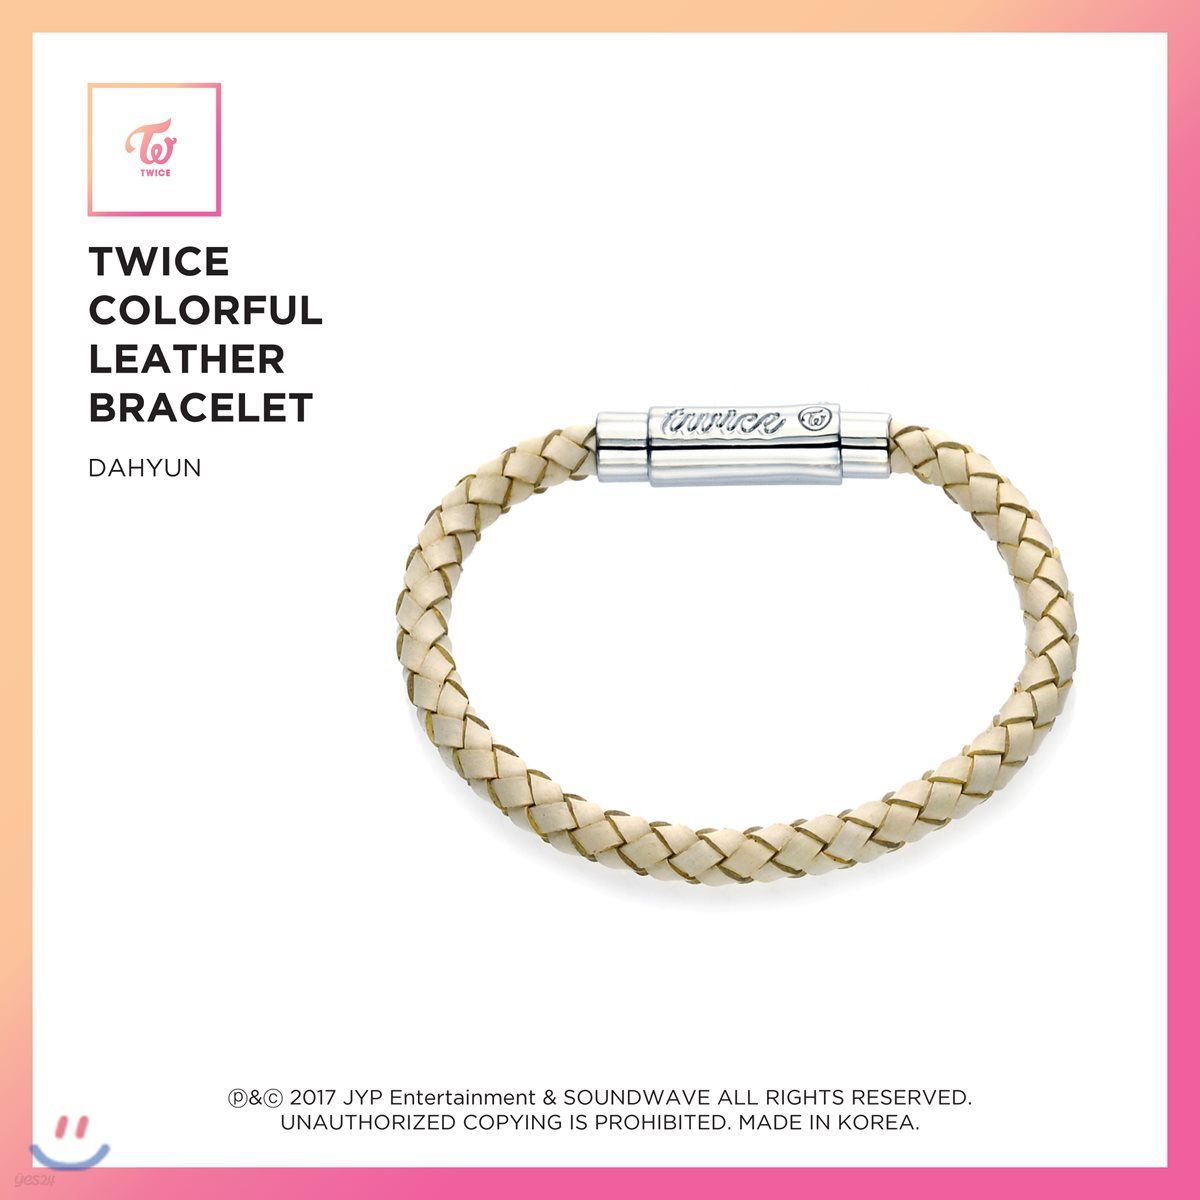 트와이스 (TWICE) - TWICE Colorful Leather Bracelet [Dahyun]